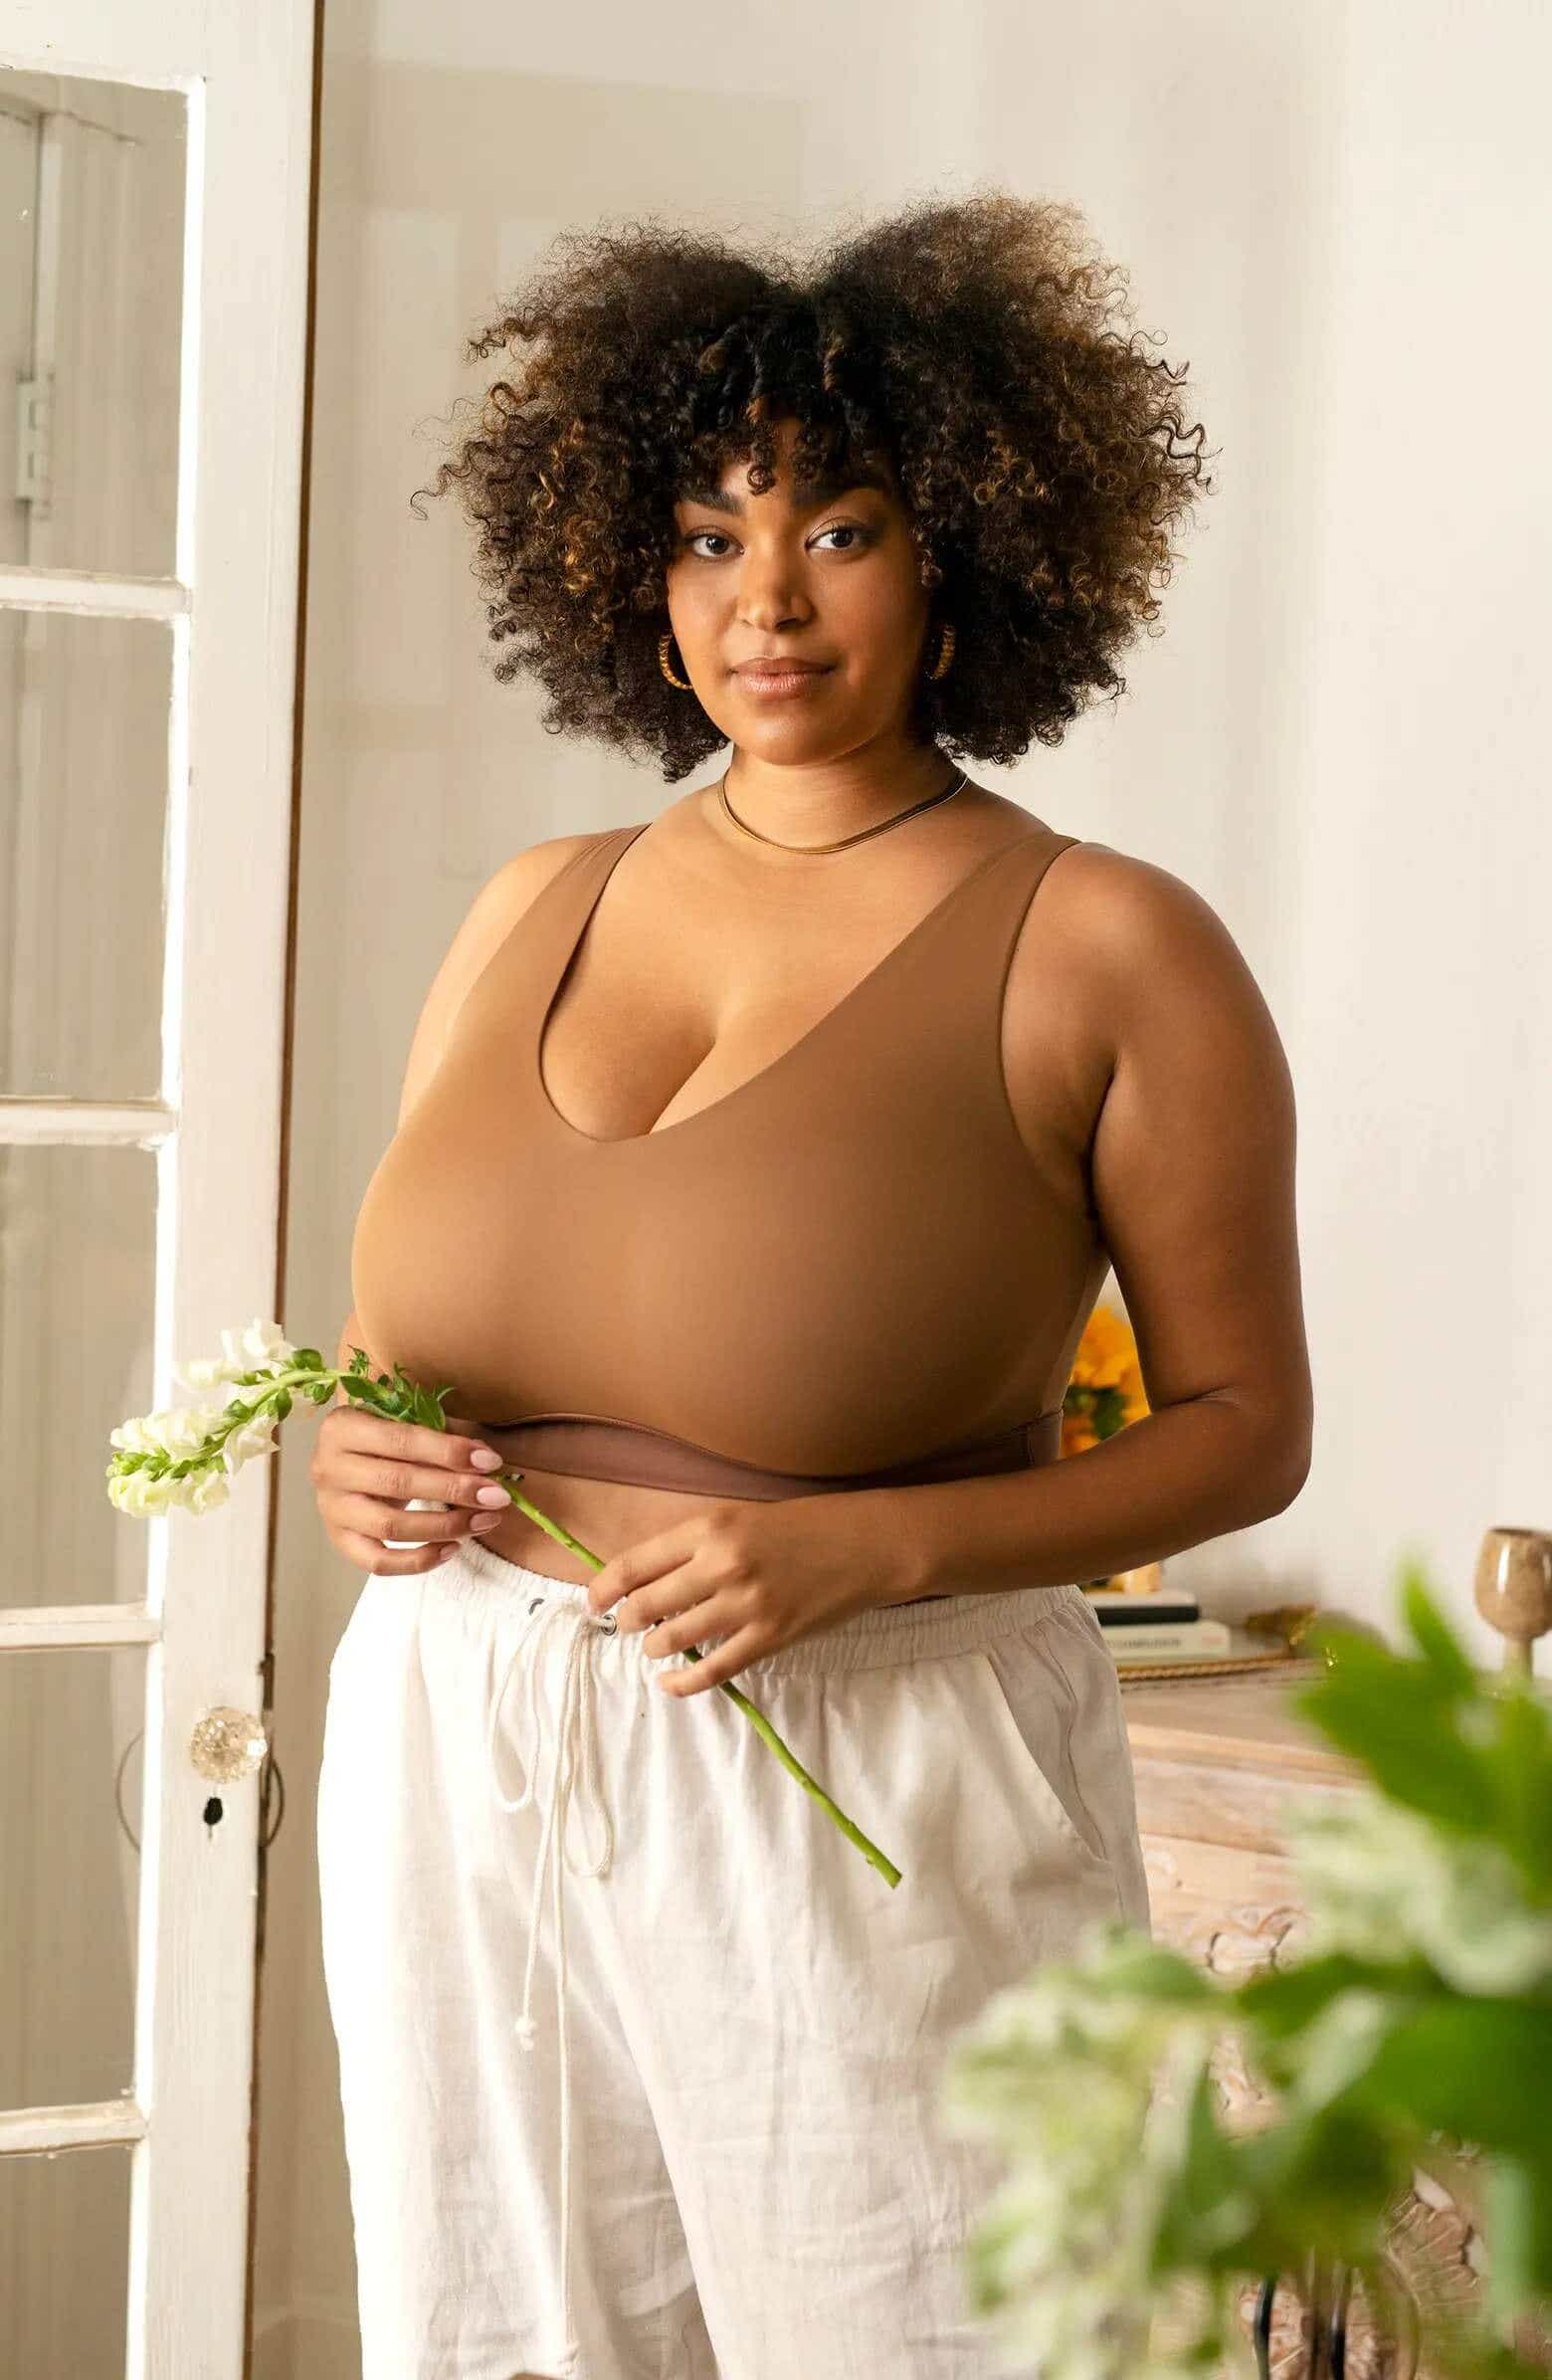 Large Mature Tits Best Adult Photos At Bursasiyaset Com